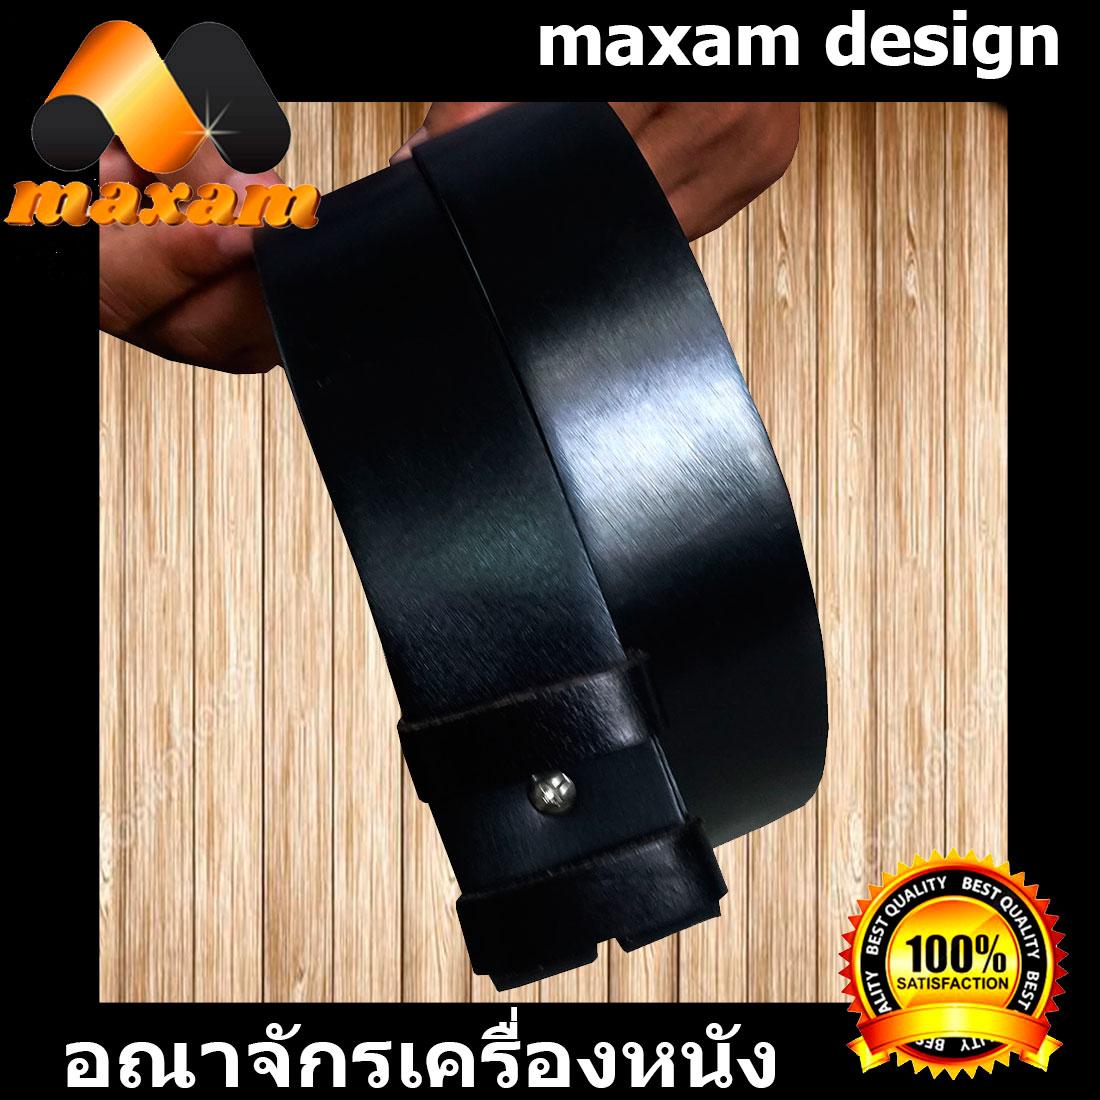 maxam design   ต้องใช้หนังแท้สิ! Genuine Cowhide Leather ใช้ของแท้ ใช้ทน ใช้นานใด้หลายปี นิศิตนักศึกษาชอบใช้  สายเข็มขัดหนังวัวอย่างแท้ๆ ยาวตลอดเส้น 42 นิ้ว เหมาะสำหรับท่านที่มีเอว 34-35-36-37 นิ้ว สีดำ     maxam design